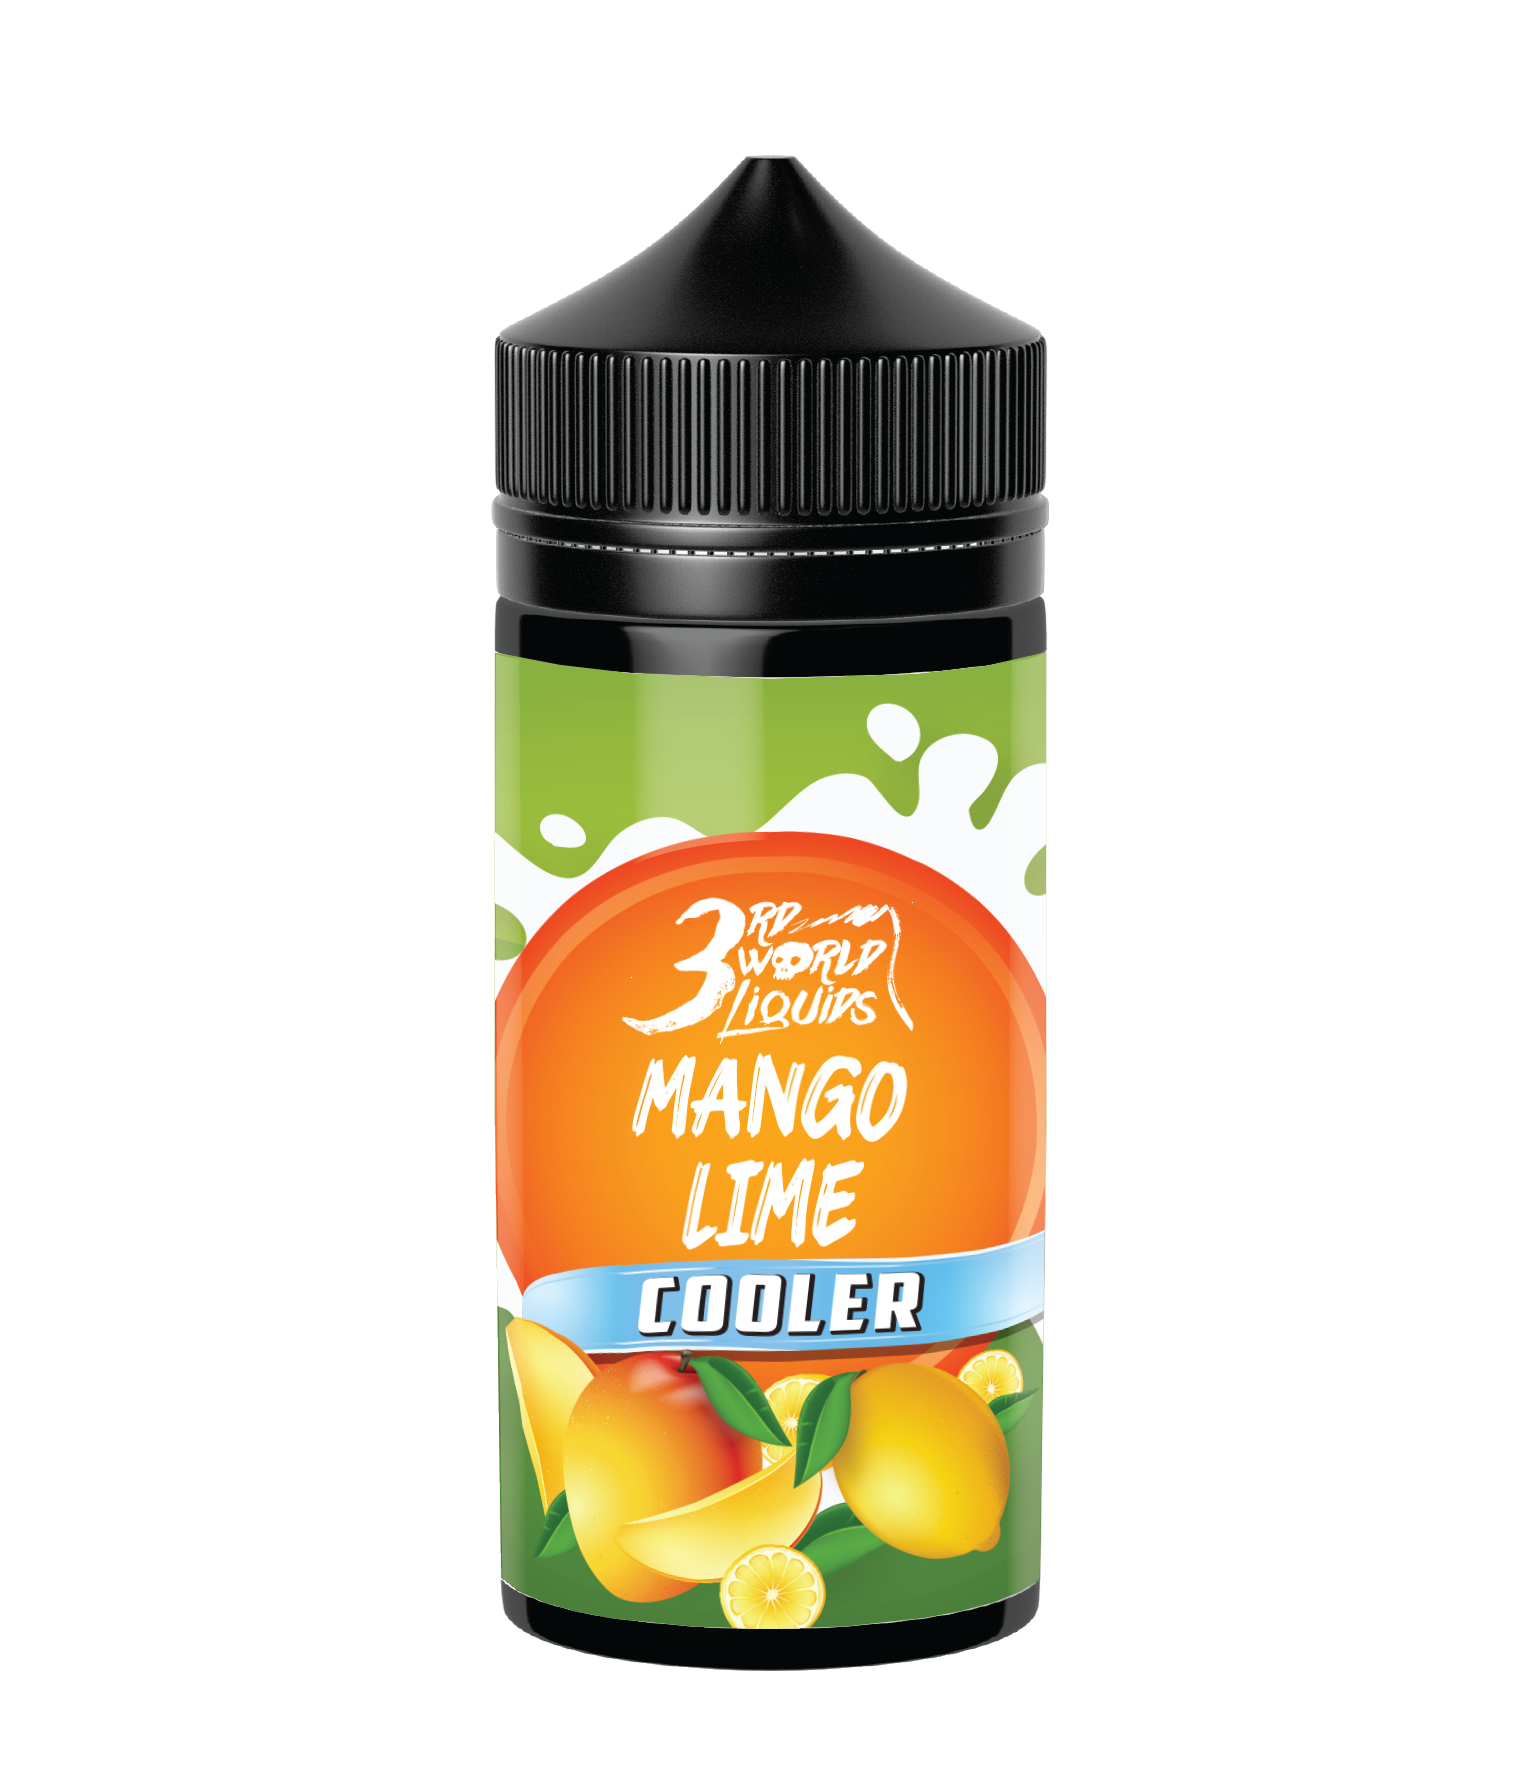 3rd World Liquids Mango Lime Cooler